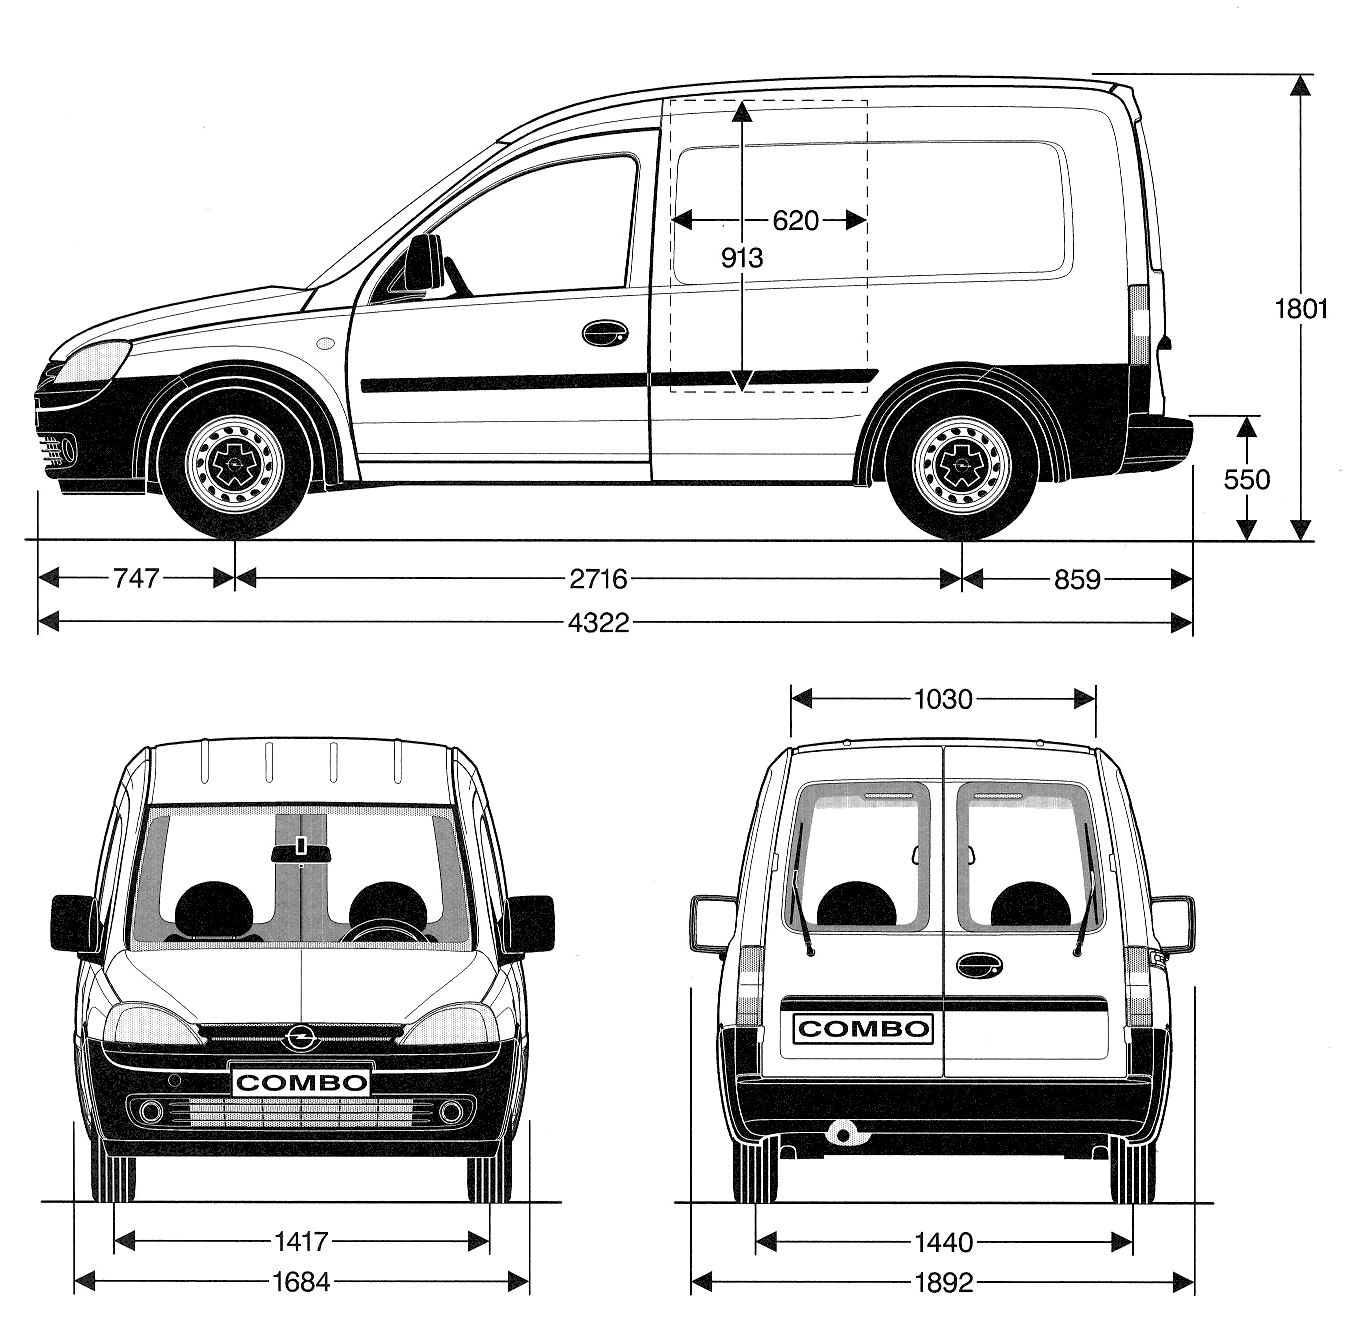 2001 Opel Combo B Van blueprint